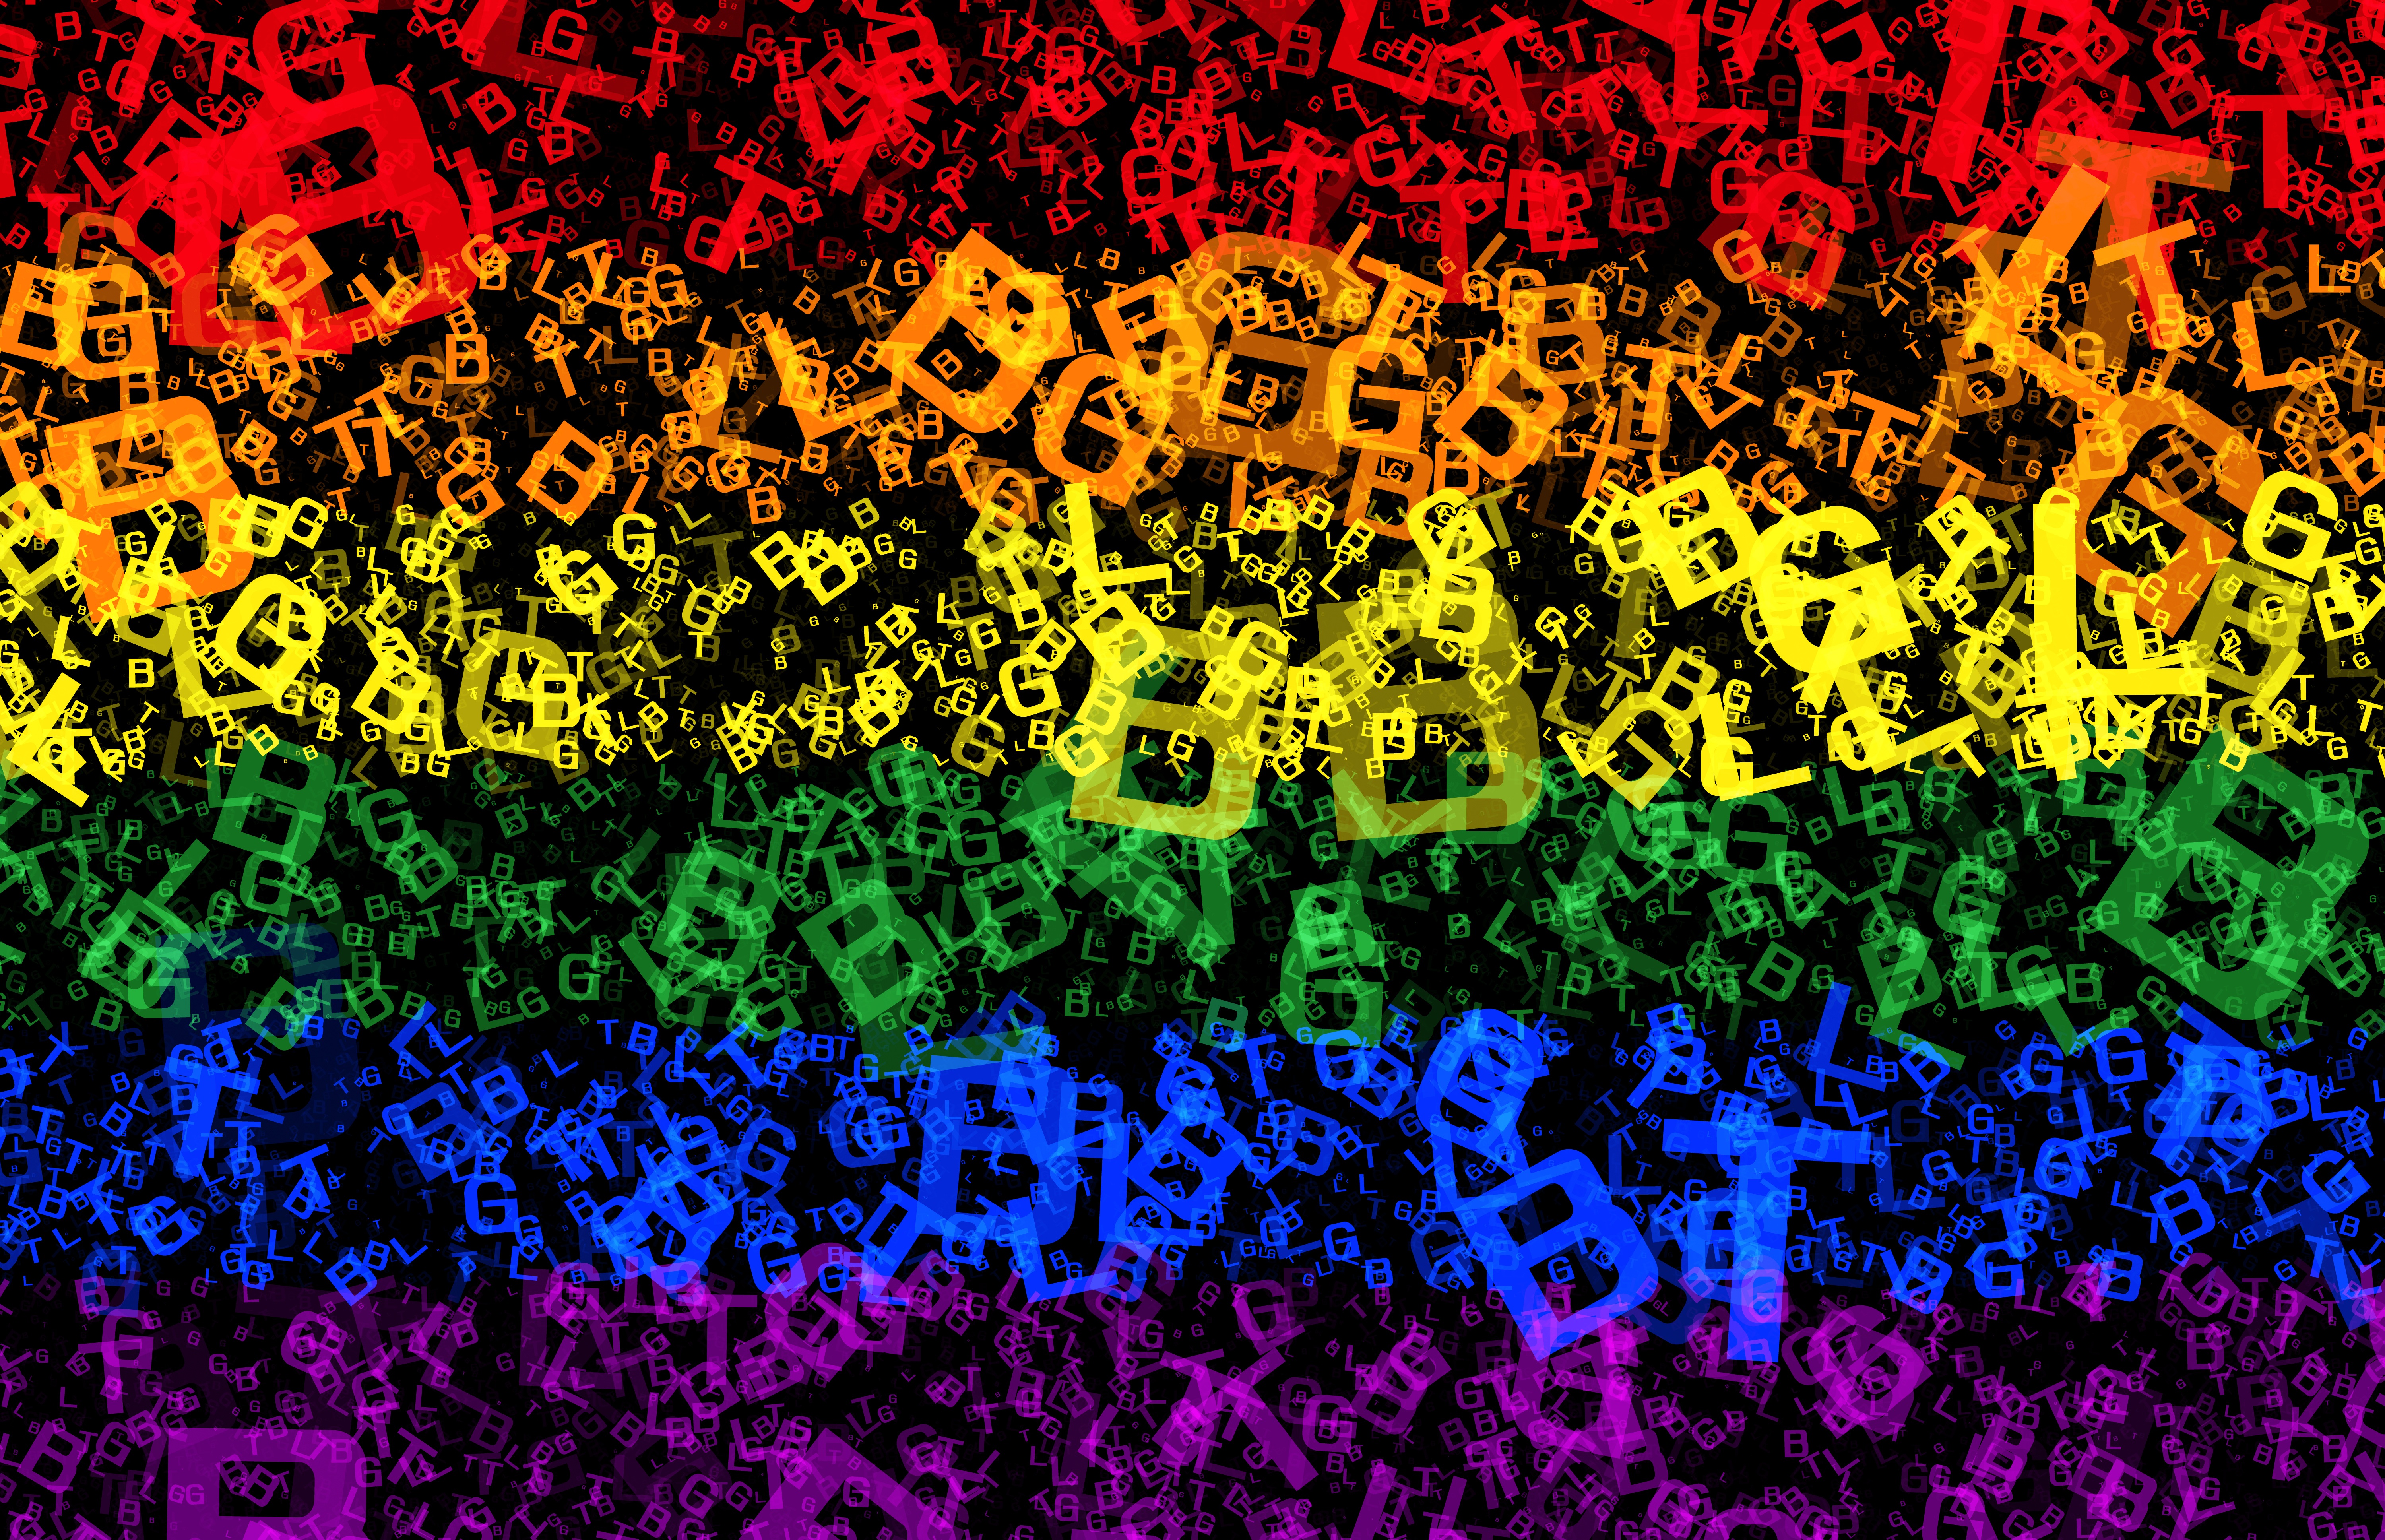 Фото lgbt pride rainbow - бесплатные картинки на Fonwall.